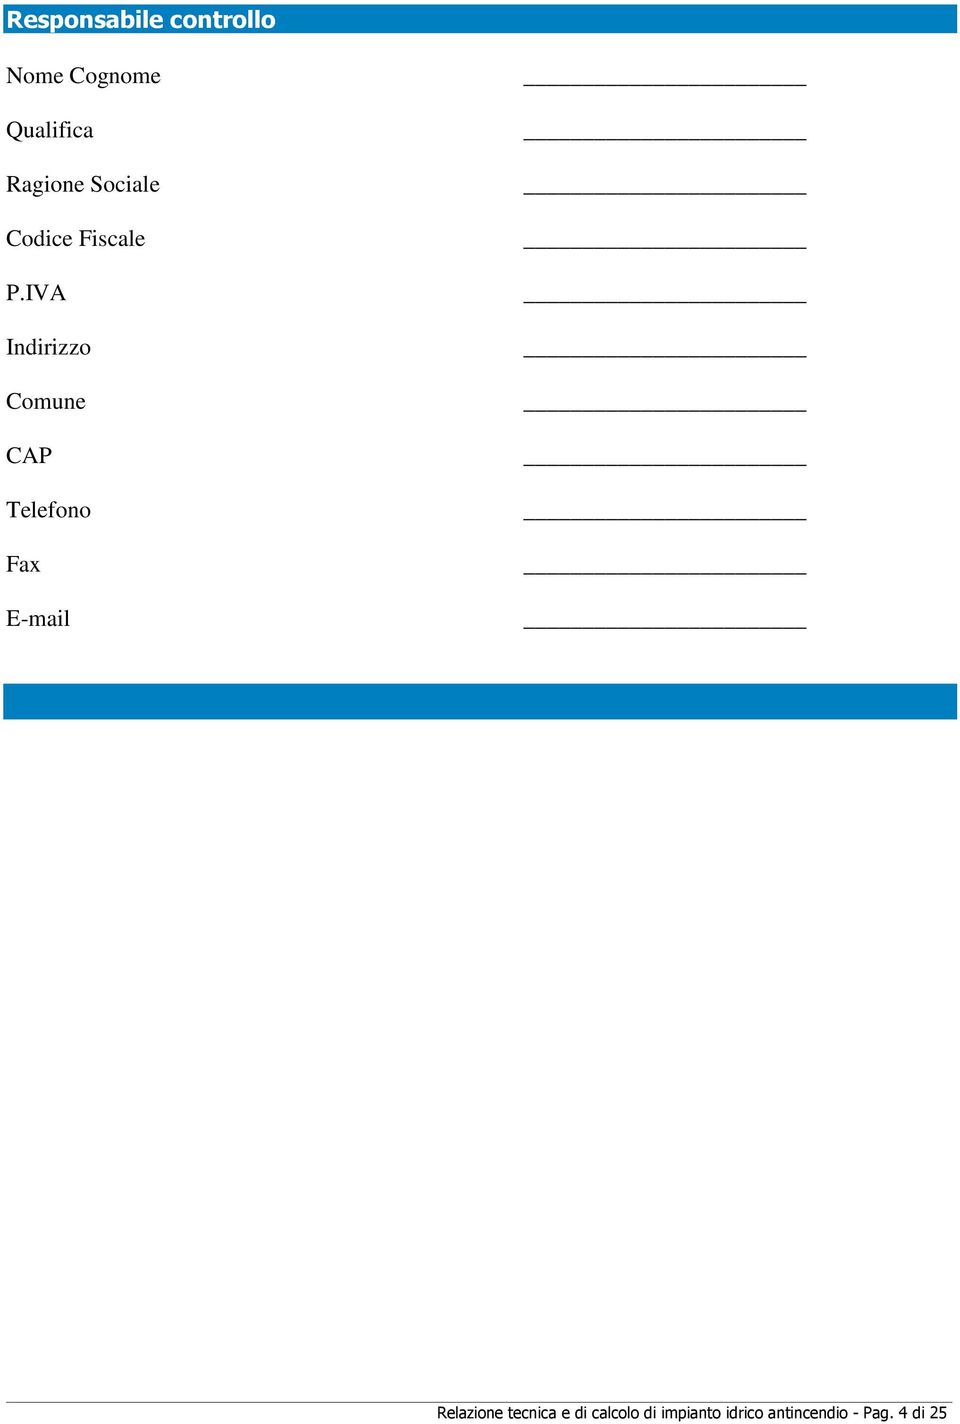 IVA Indirizzo Comune CAP Telefono Fax E-mail